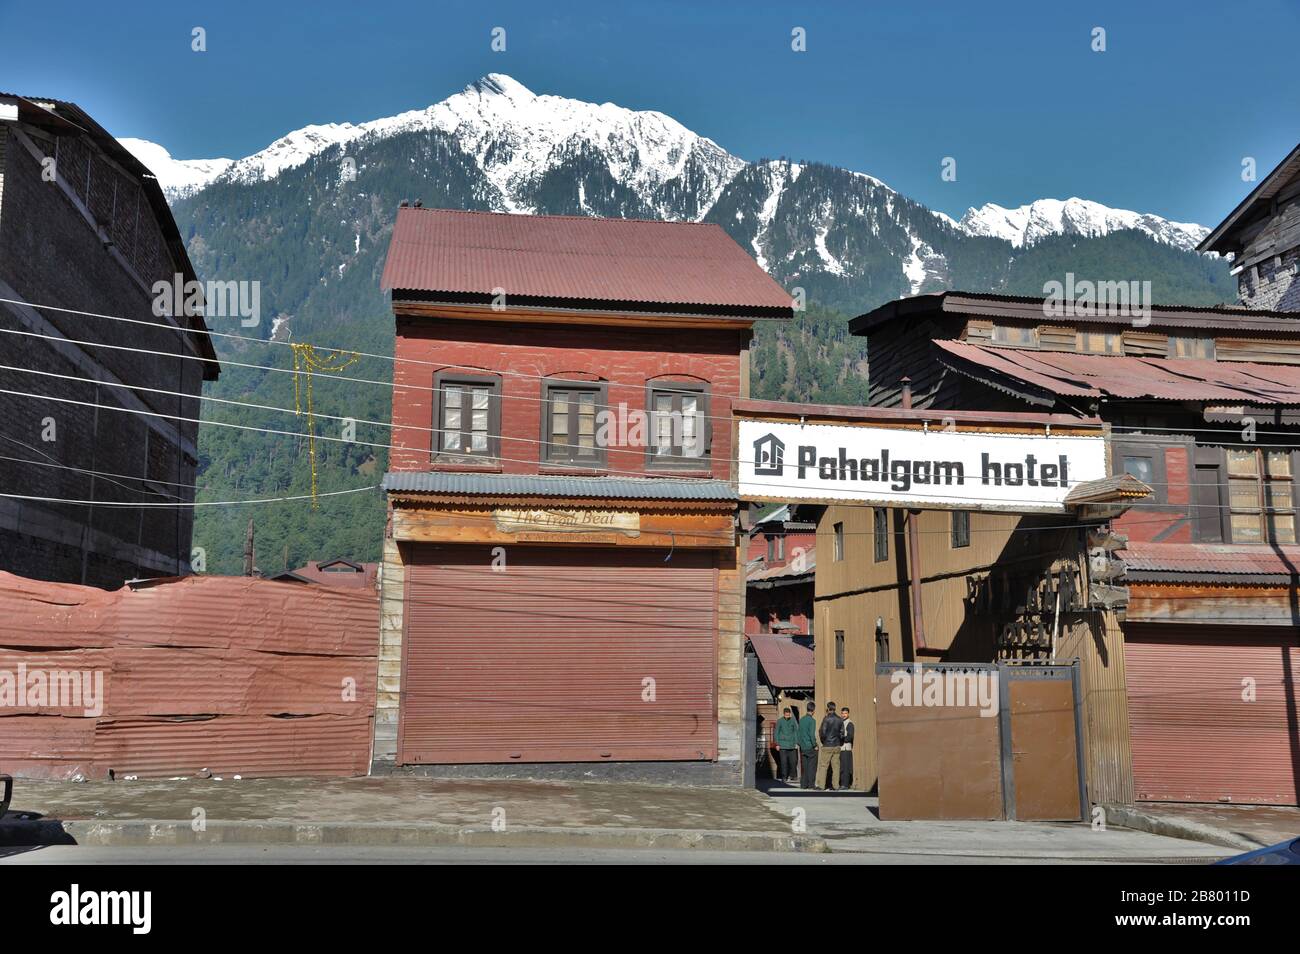 Pahalgam Hotel entrance gate, Pahalgam, Kashmir, Jammu and Kashmir, India, Asia Stock Photo